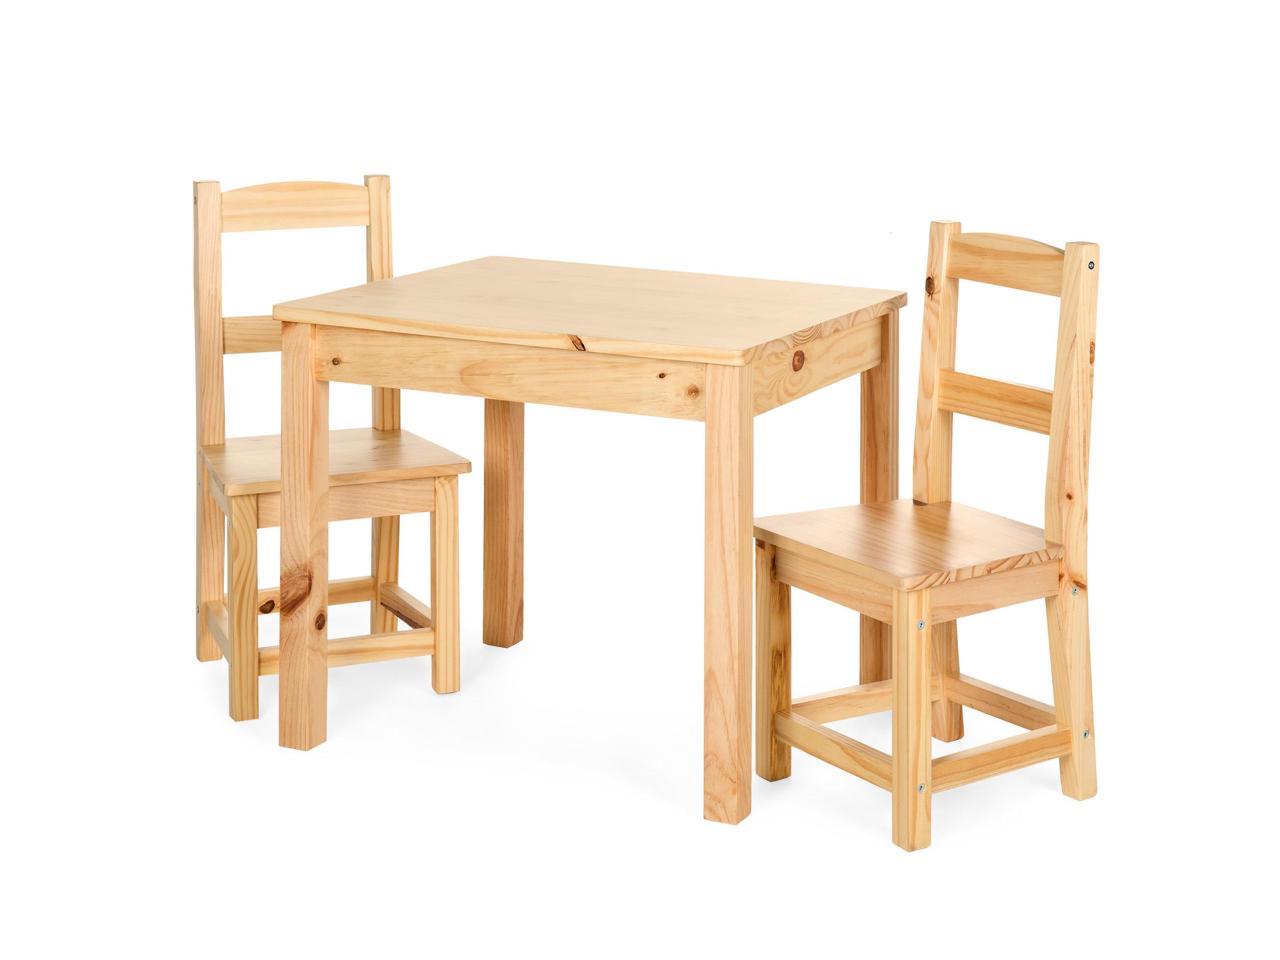 multipurpose table for kids